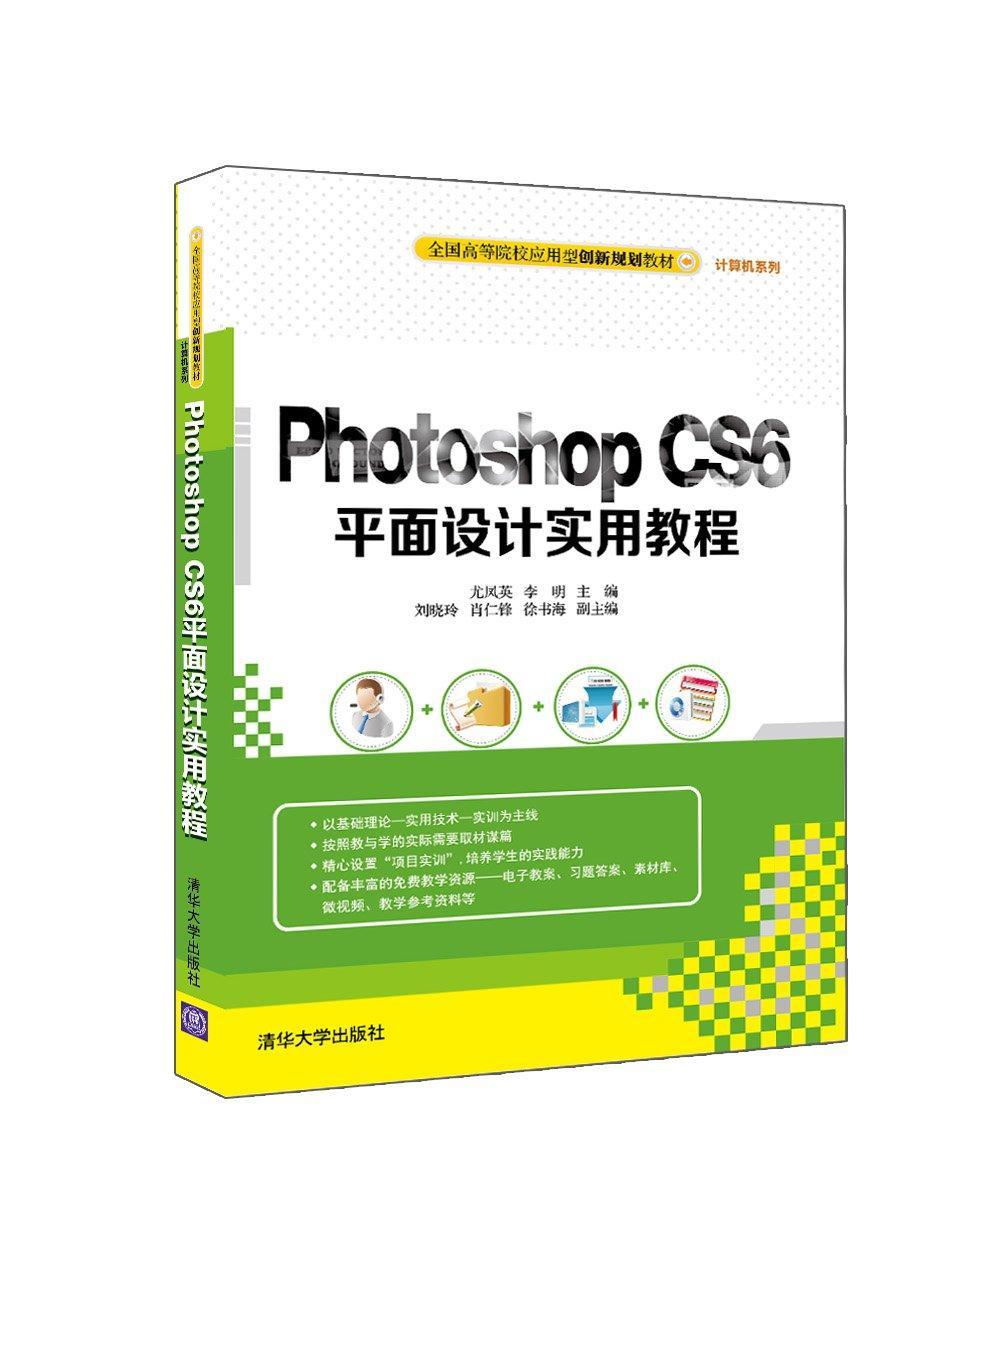 RT69包邮 Photoshop CS6面设计实用教程清华大学出版社教材图书书籍